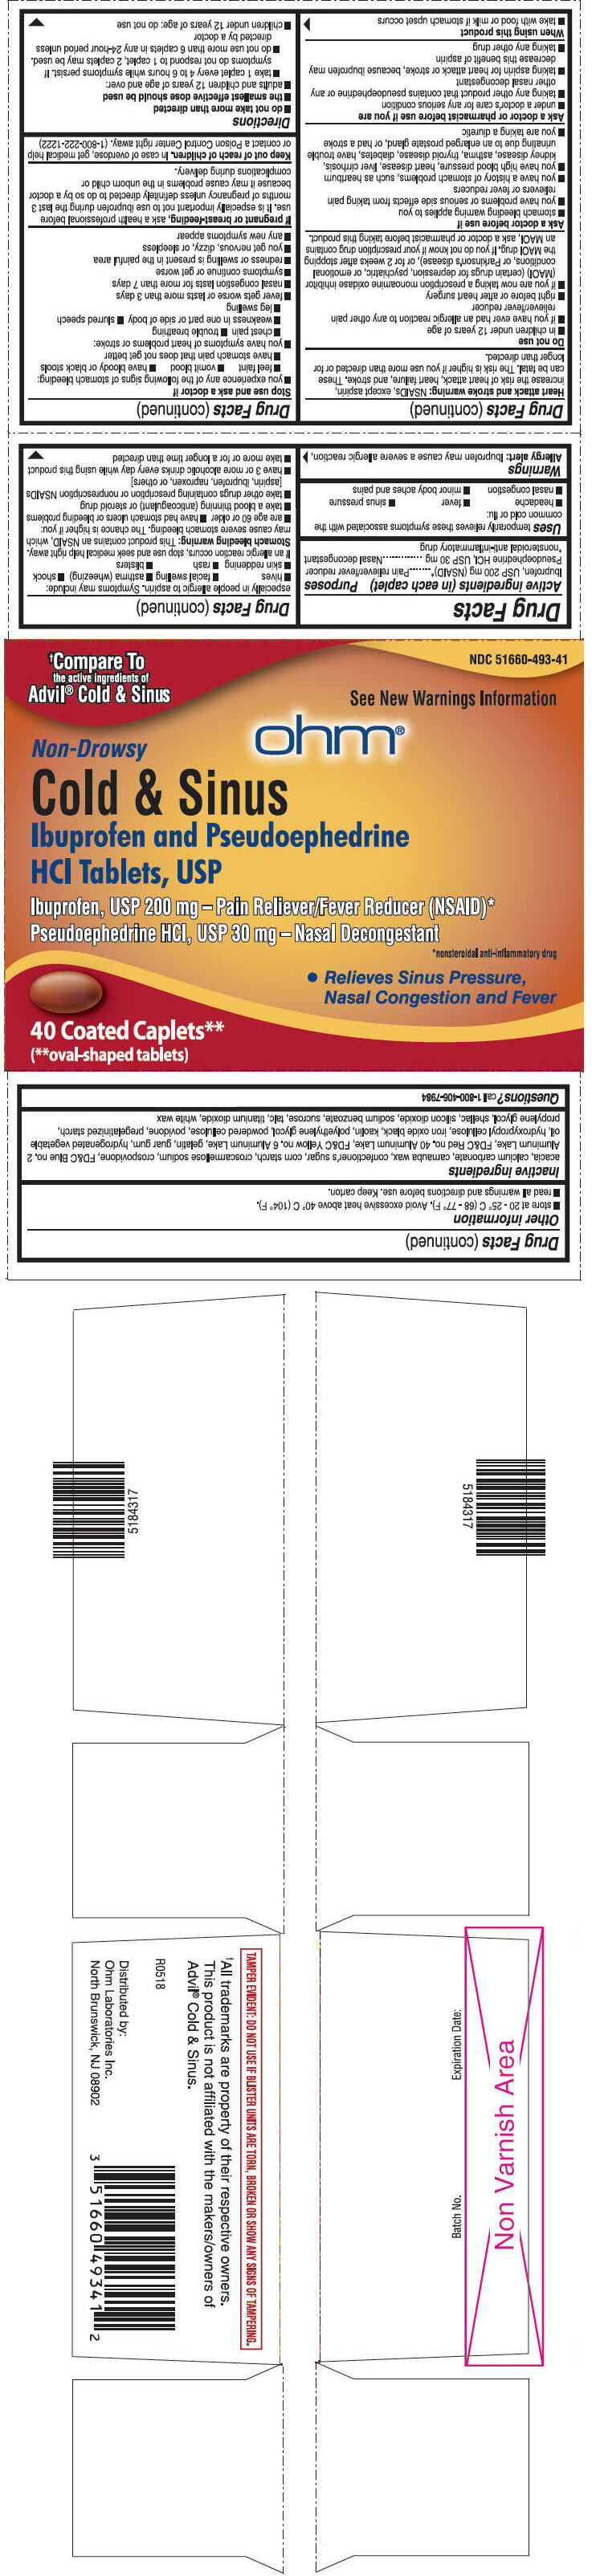 PRINCIPAL DISPLAY PANEL - 200 mg/30 mg Tablet Blister Pack Carton